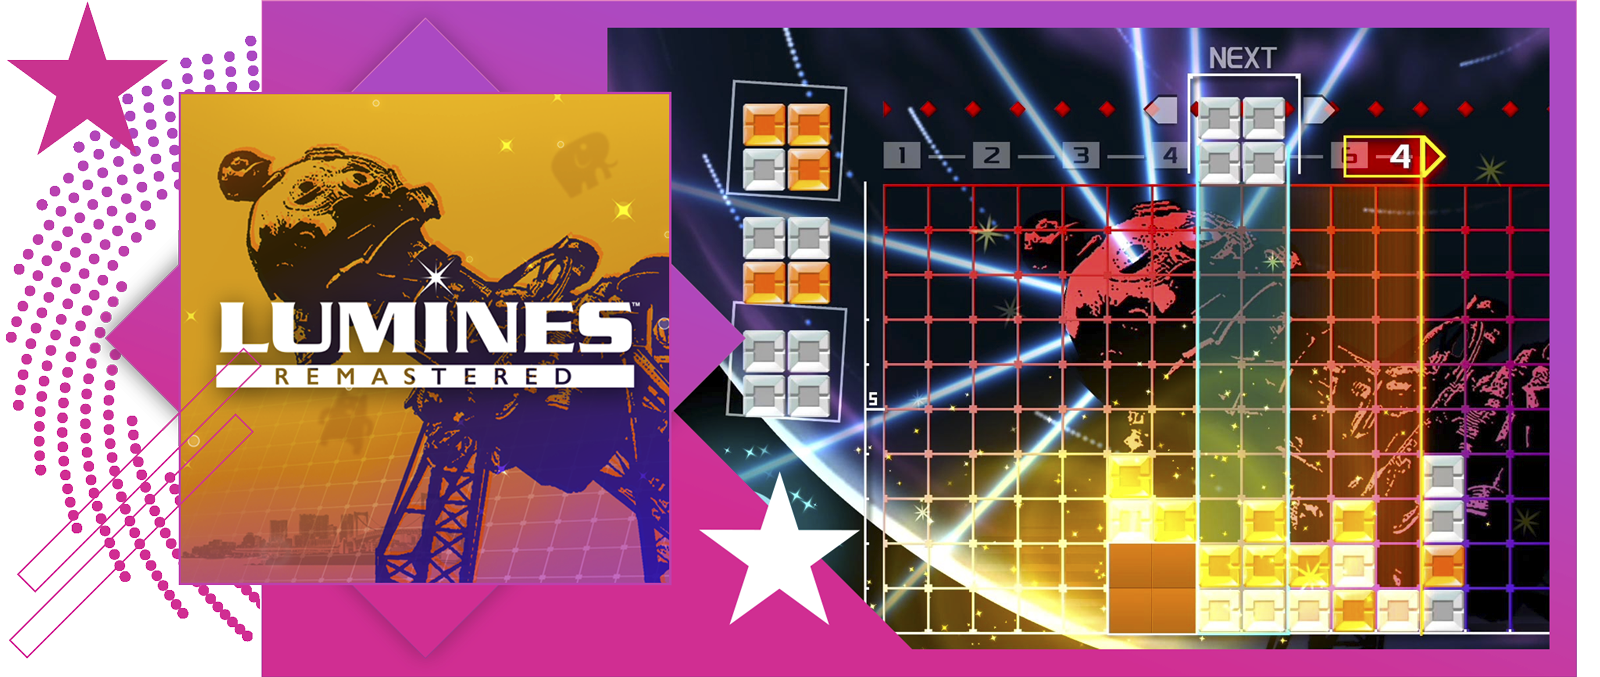 Les meilleurs jeux de rythme - Illustration principale et de gameplay de Lumines Remastered.